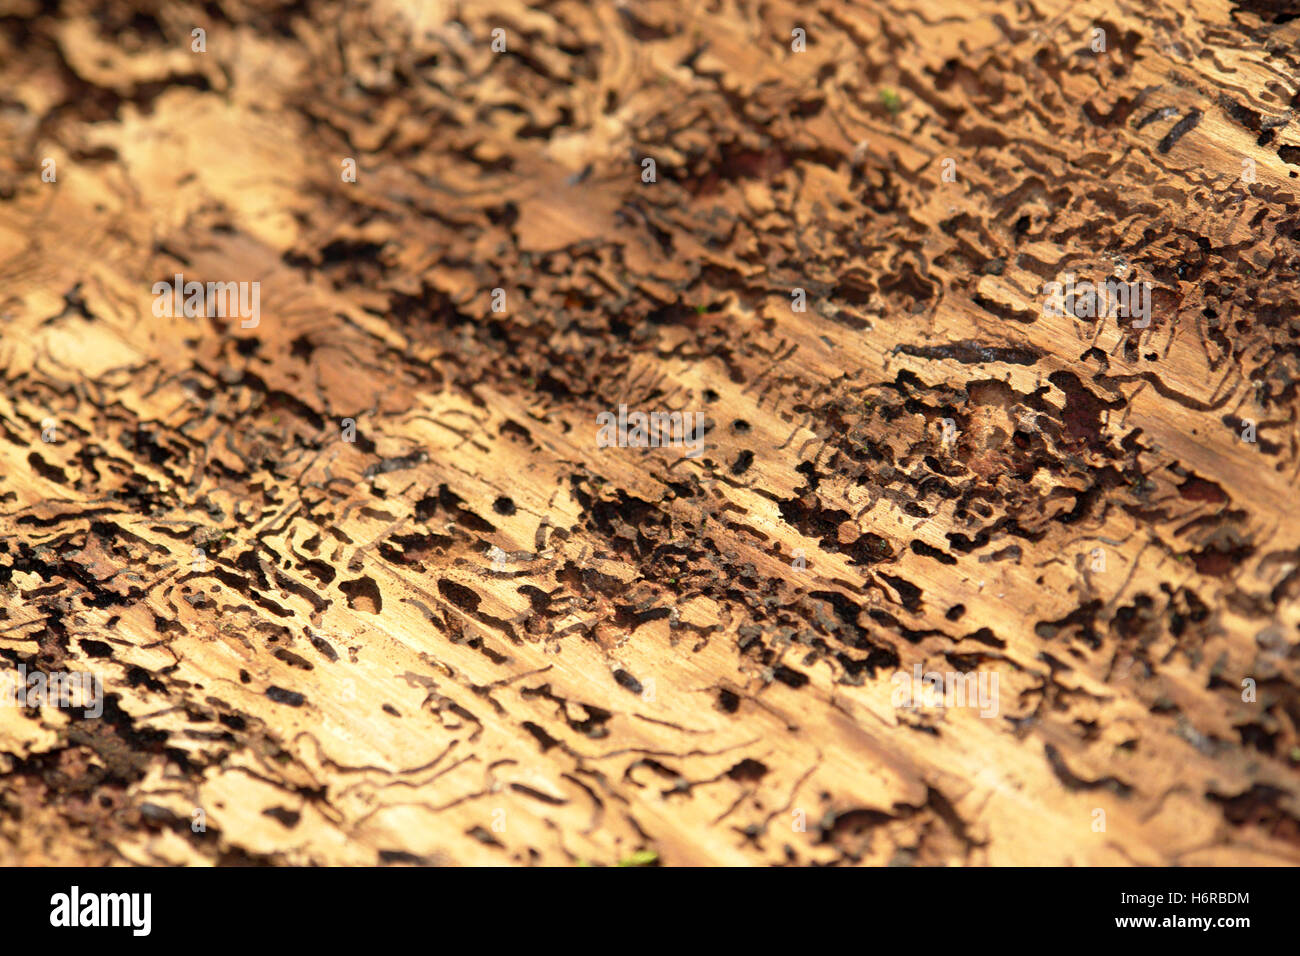 Corteccia holey bostrico format-riempimento animale forata insetto coleottero di legno di corteccia di controllo di peste holey foro modifica astratto Foto Stock